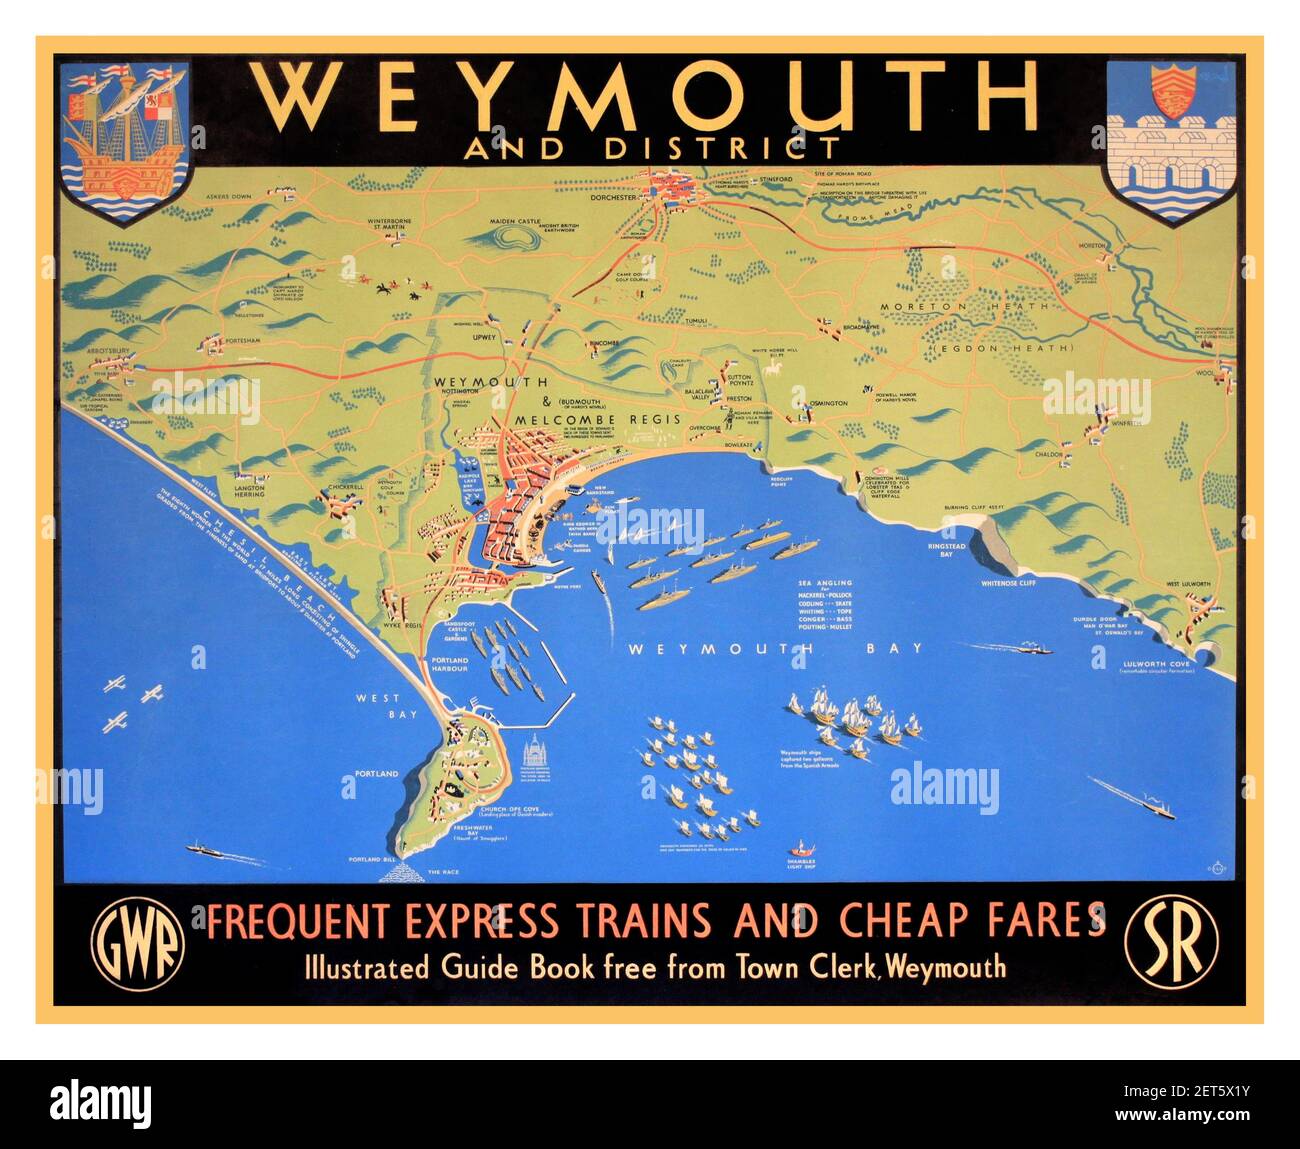 WEYMOUTH Vintage UK Travel Vacation Tour carte carte du littoral 'Dilly's Weymouth and District, affiche originale imprimée pour GWR et SR par Baynard 1947 Banque D'Images